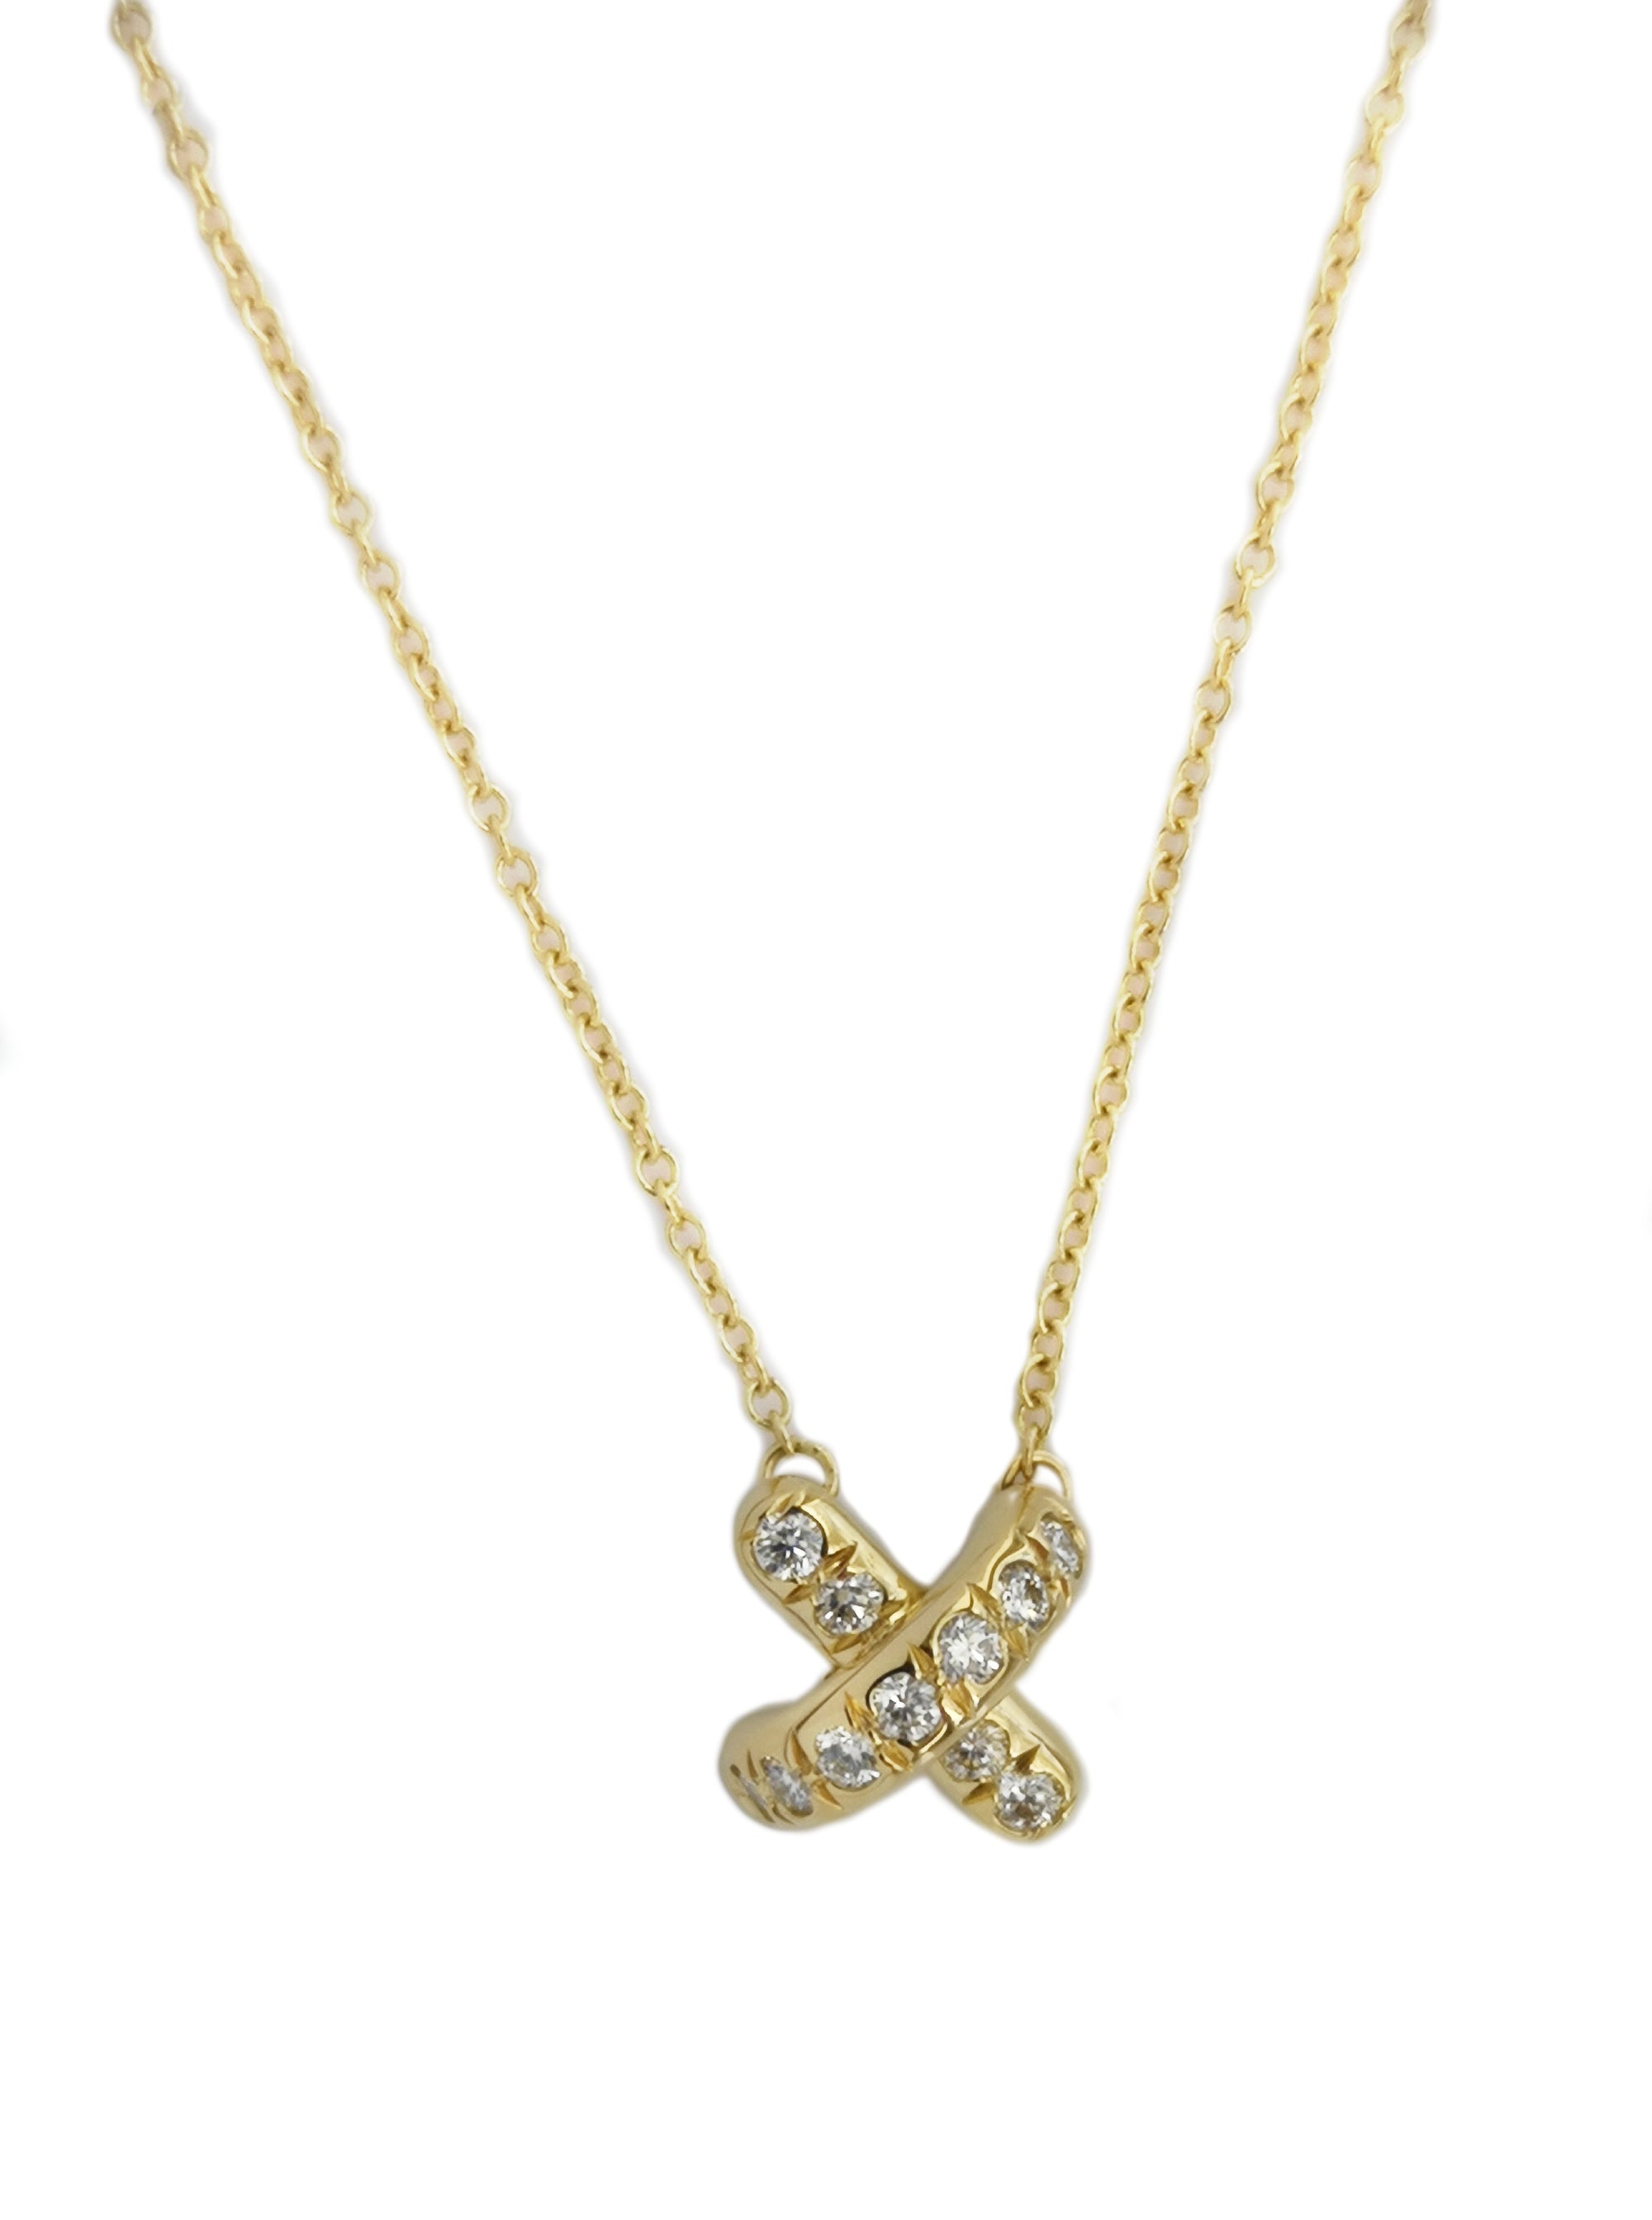 Tiffany & Co. Paloma Picasso Heart X Necklace | eBay